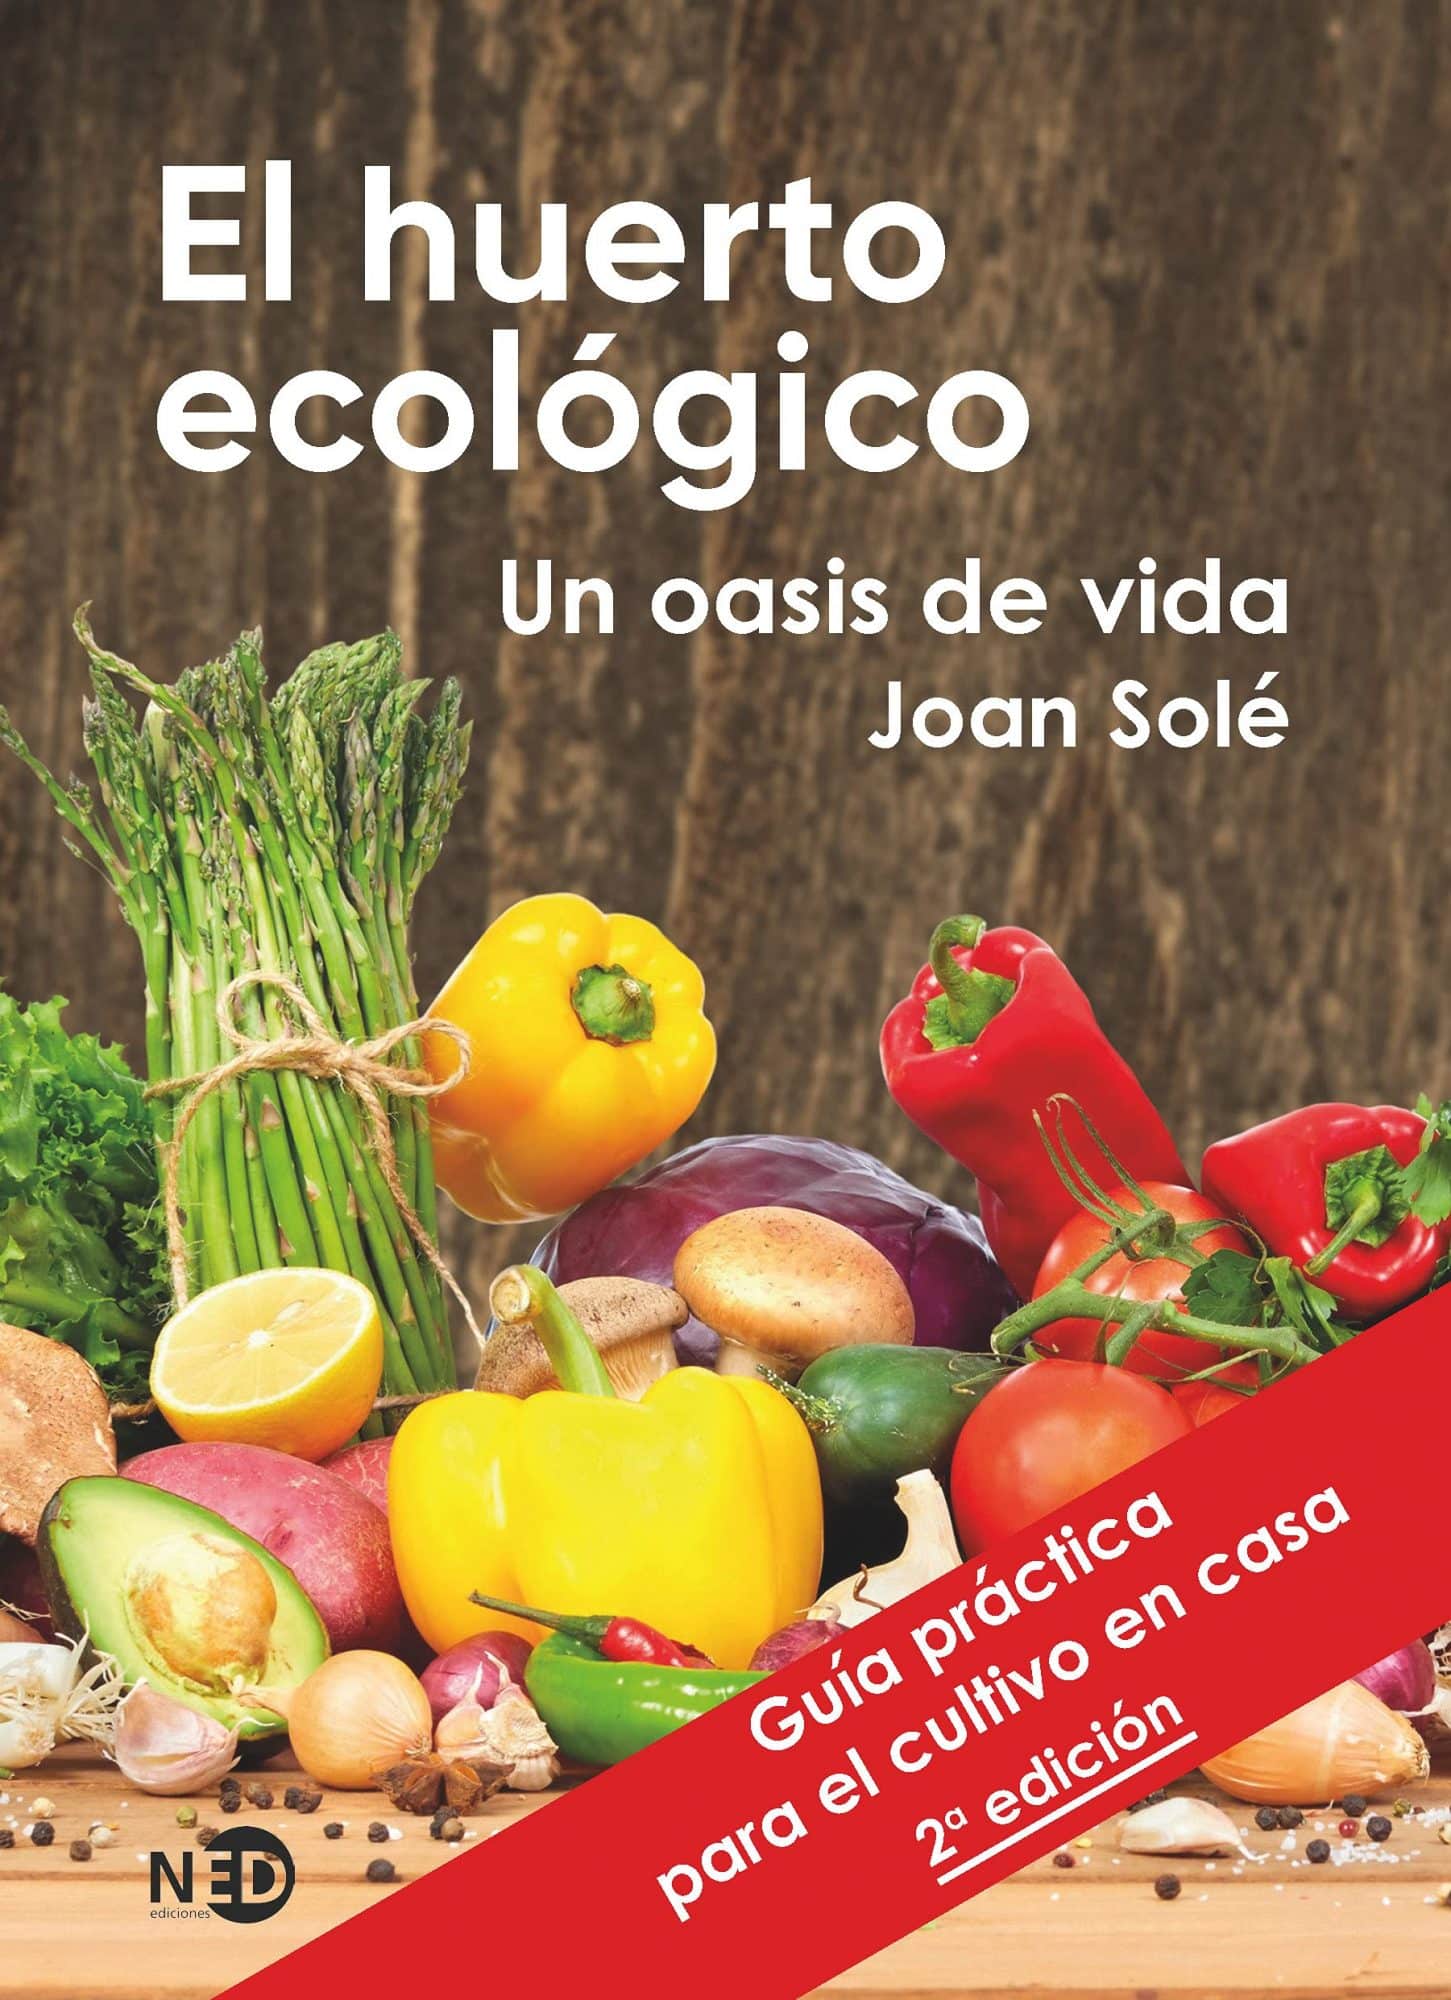 Libro HUERTO ECOLÓGICO: UN OASIS DE VIDA de Joan Solé. Permacultura y agricultura